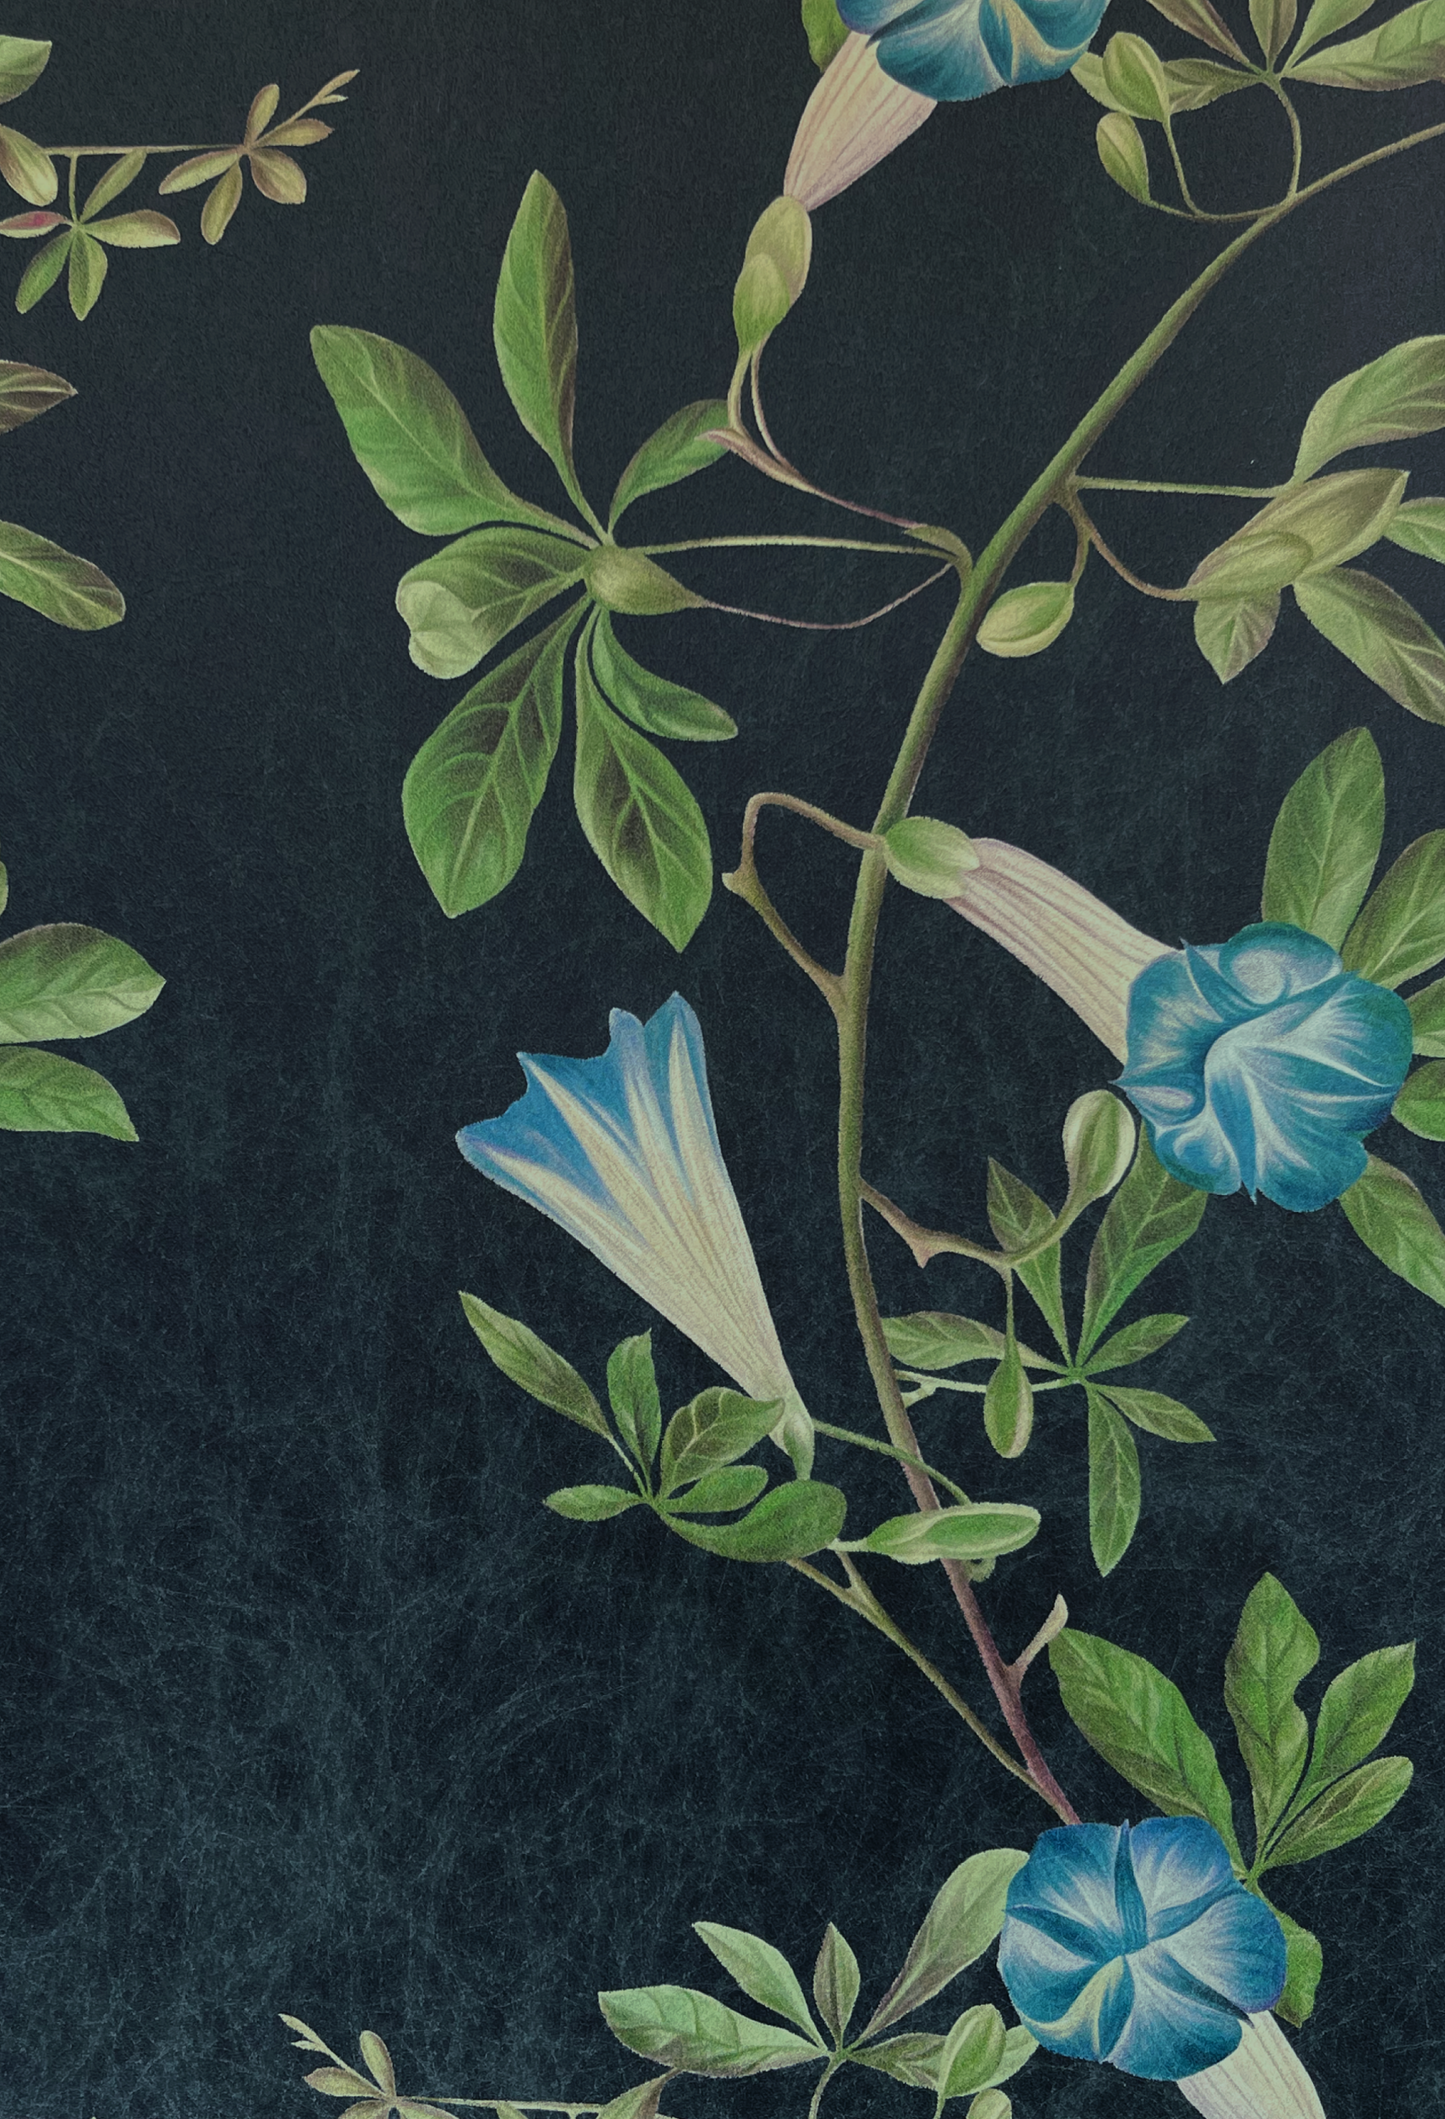 Blue floral vines on dark ground by Deus ex Gardenia's Midsummer Wallpaper in Charcoal.